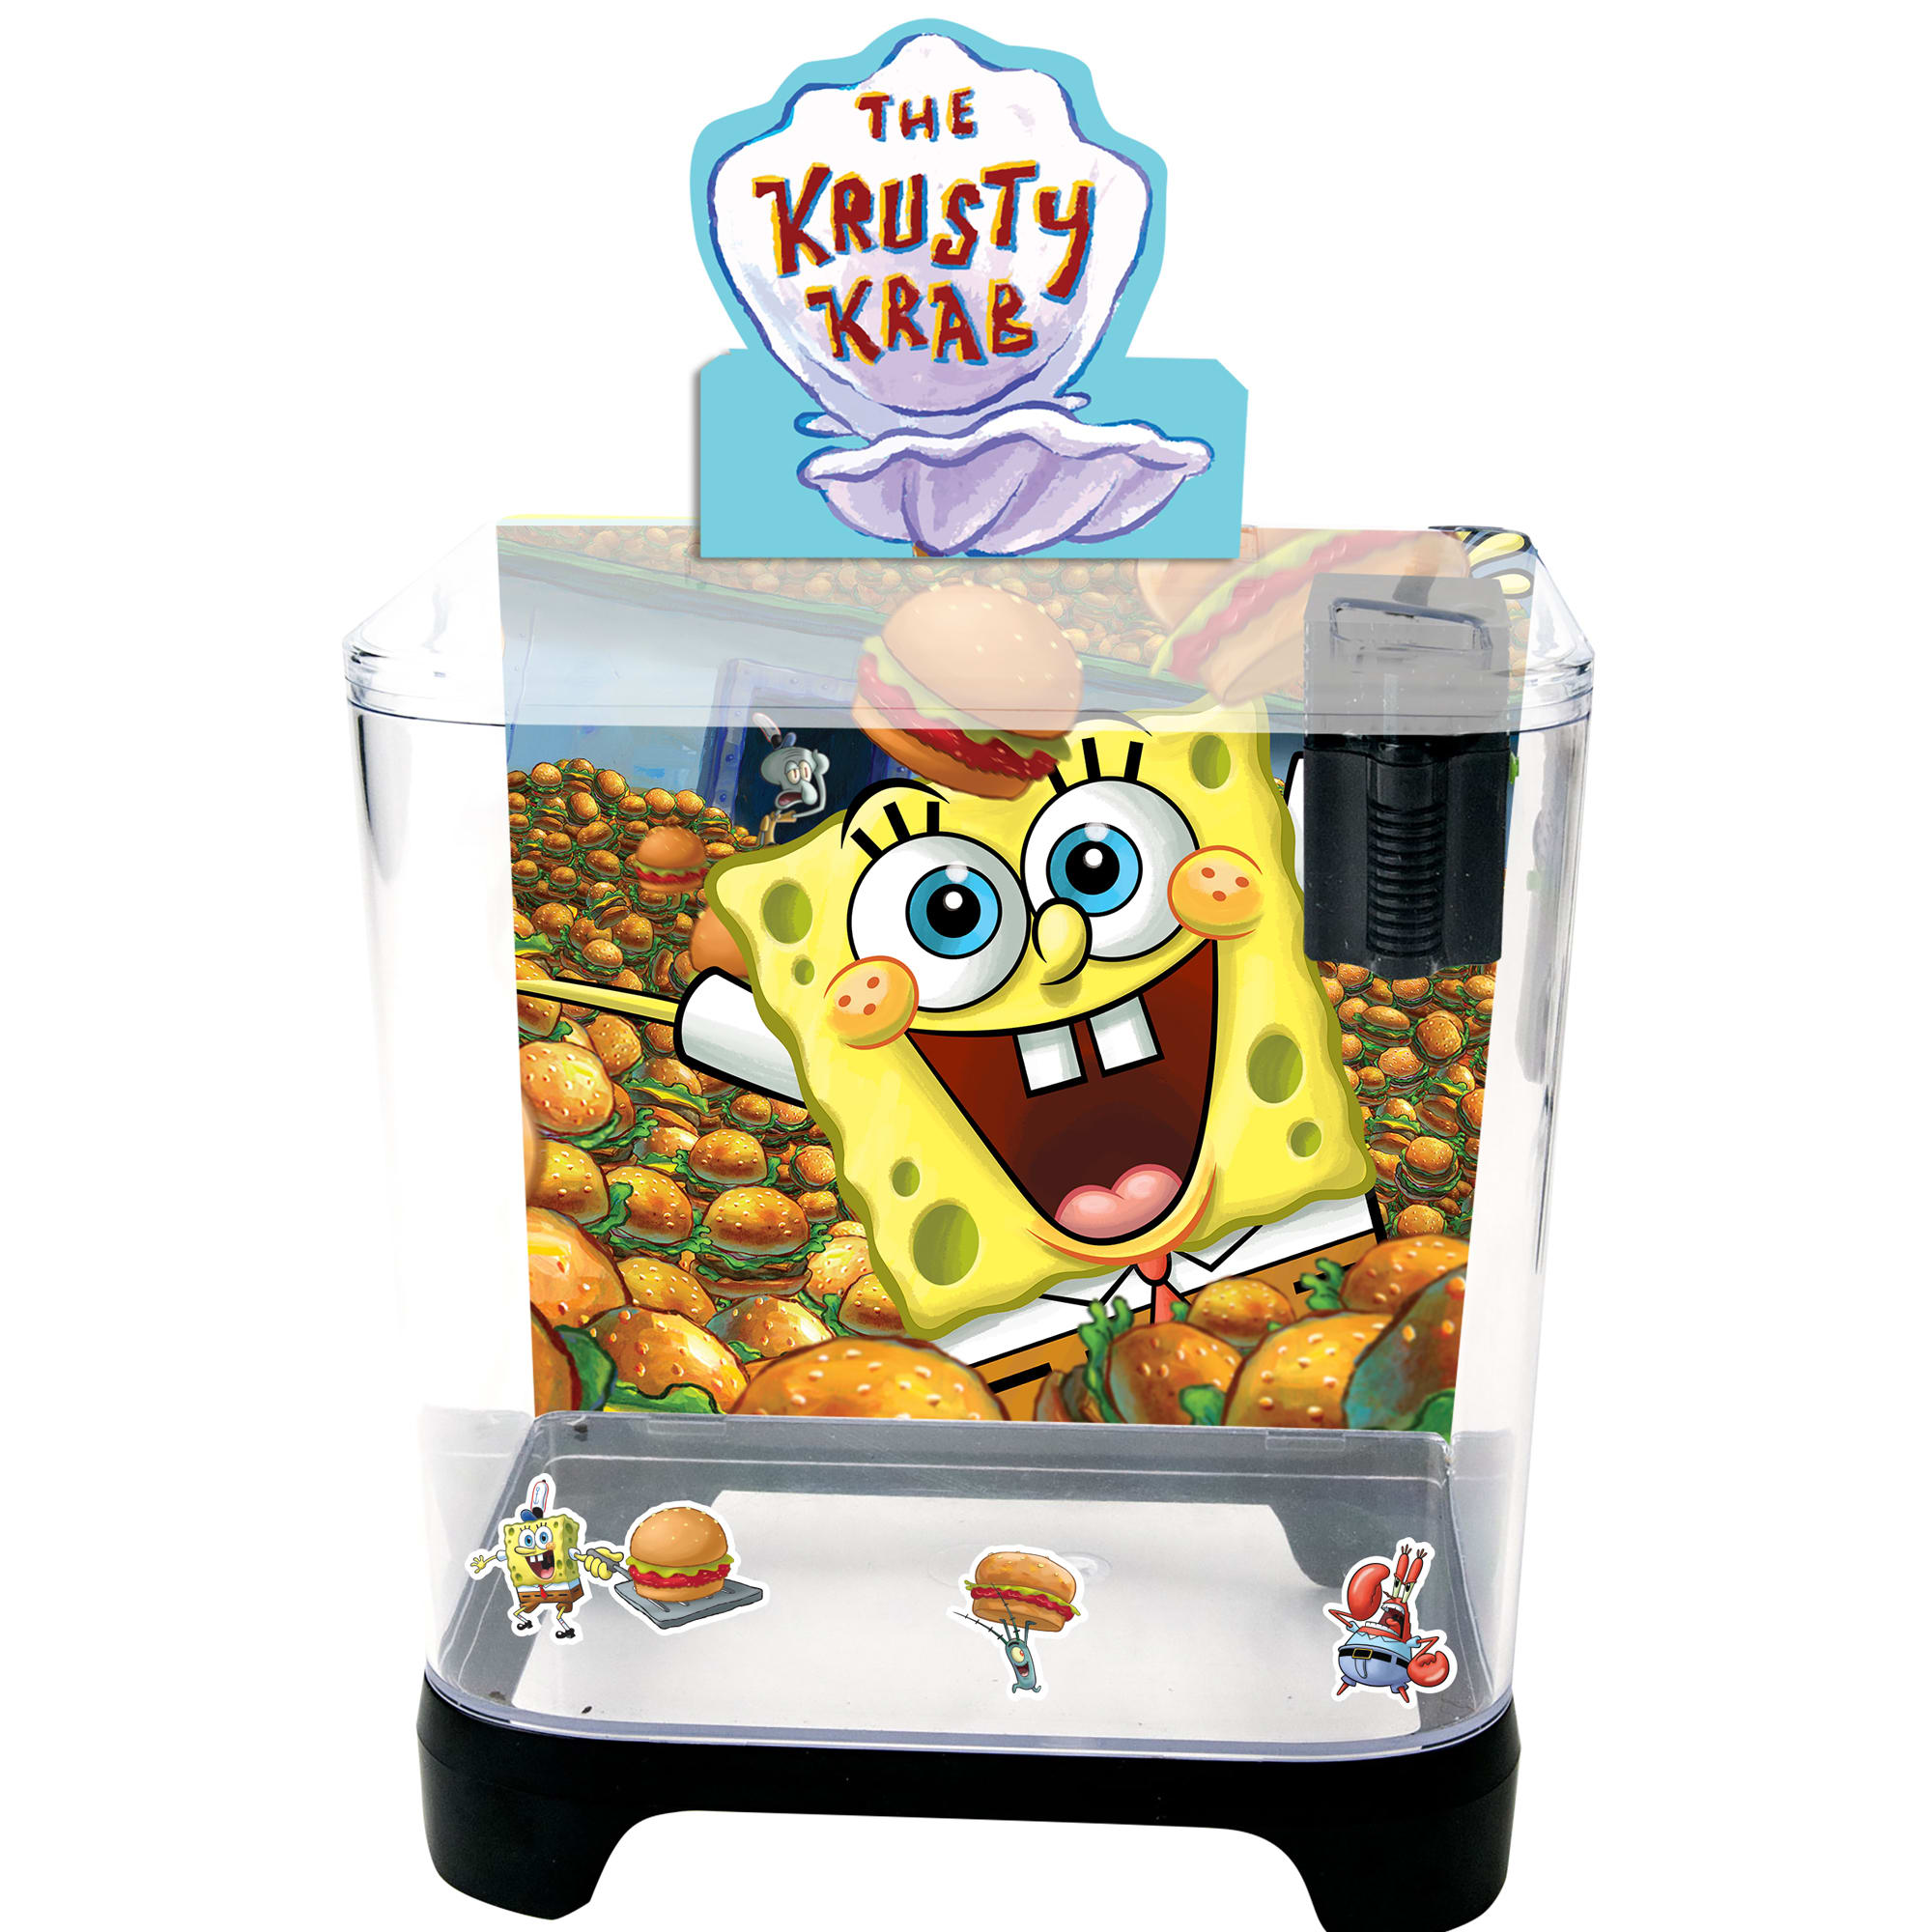 Spongebob filter feeding